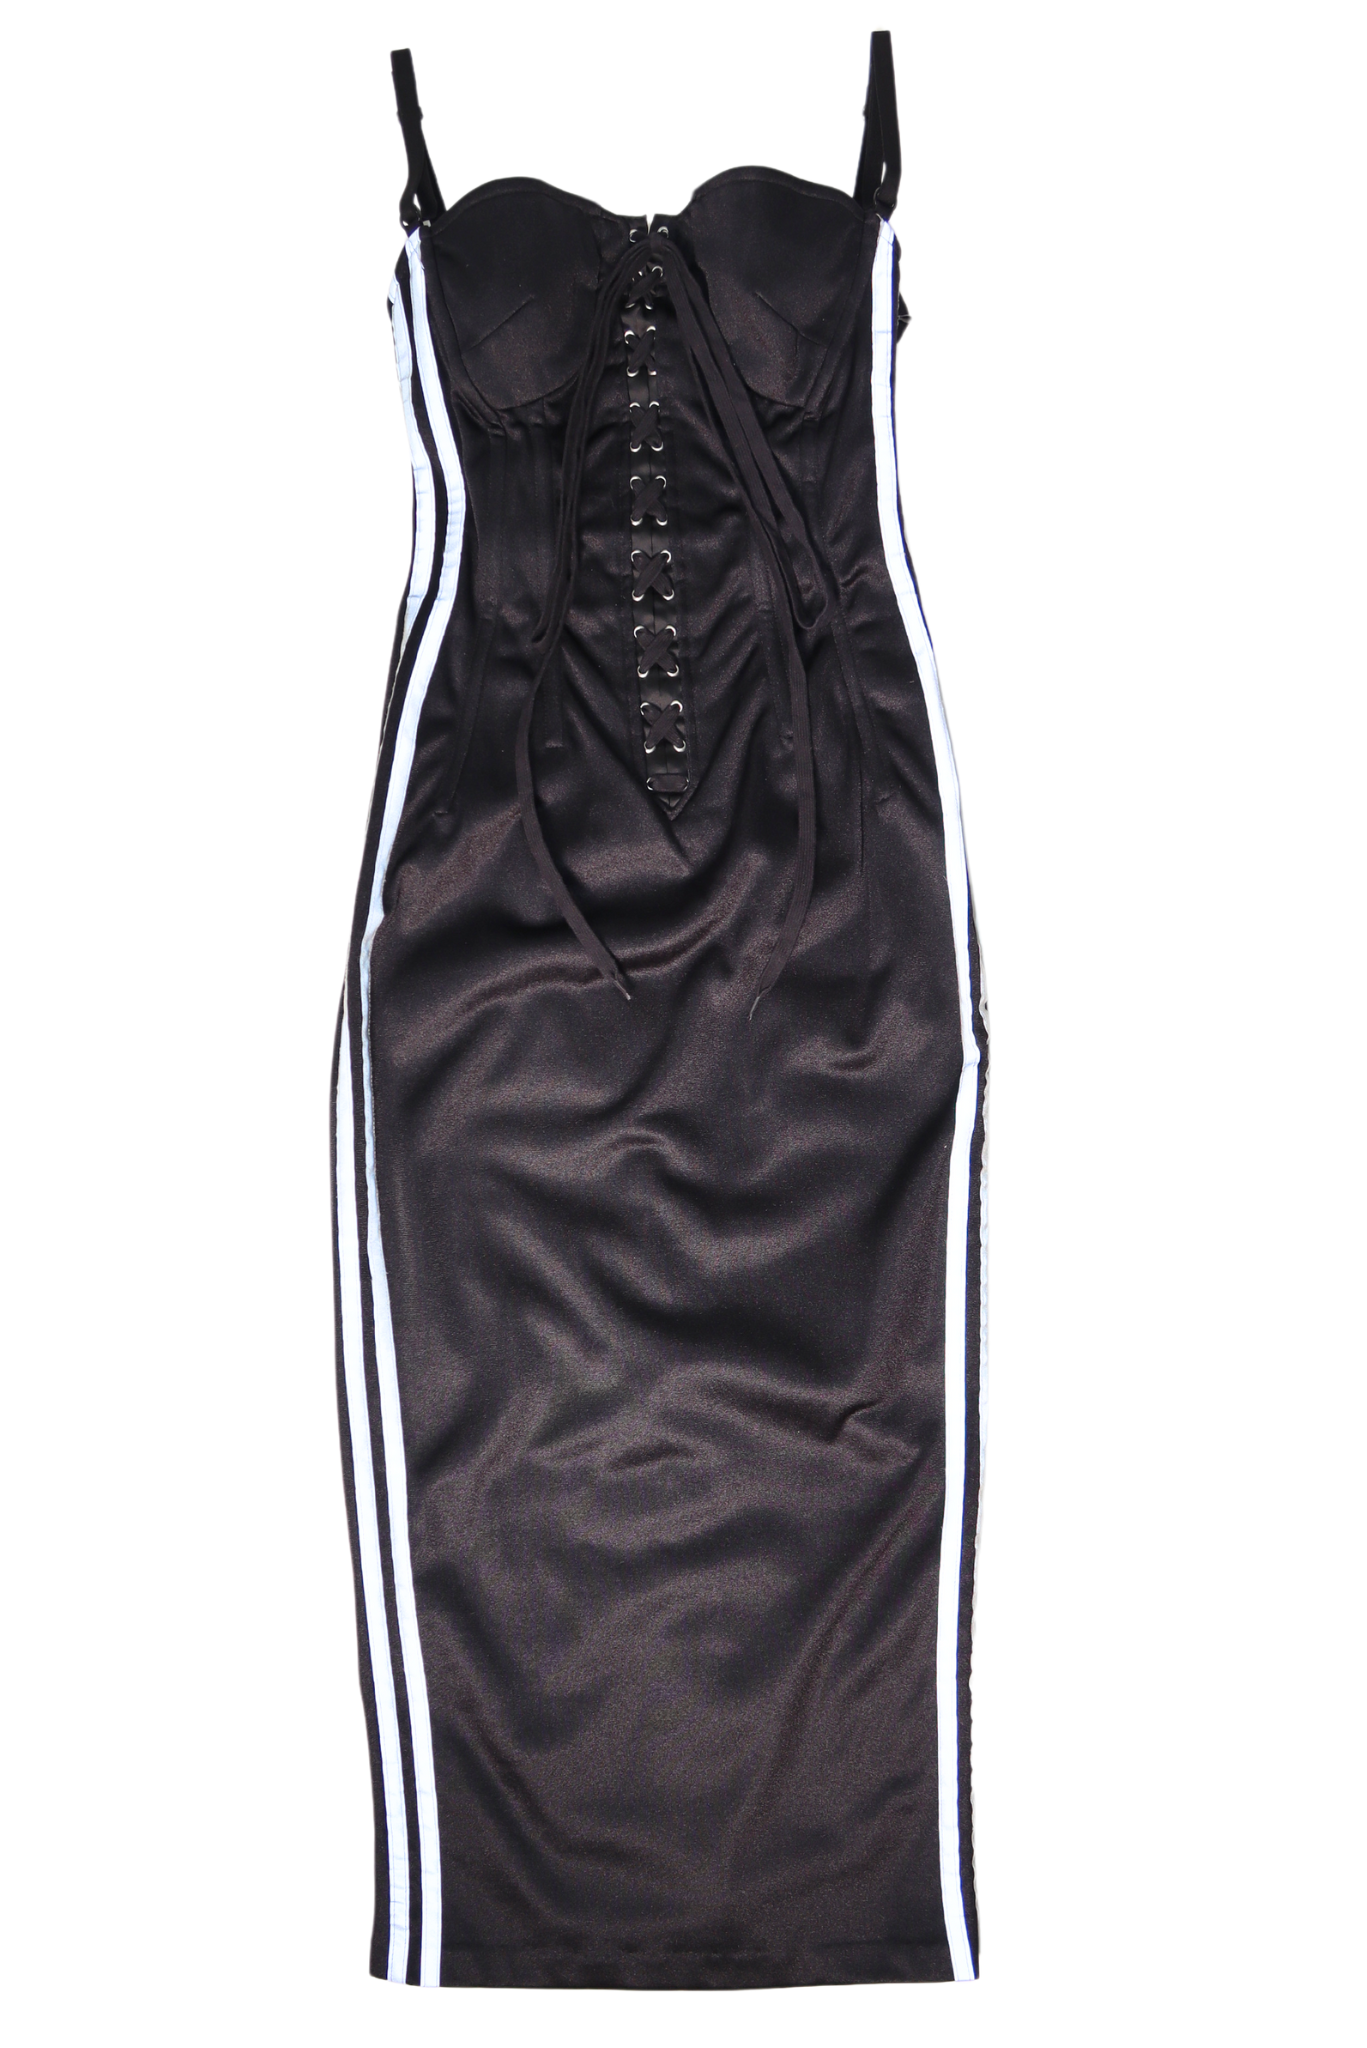 Dolce & Gabbana Corset Lace Up 3M Dress